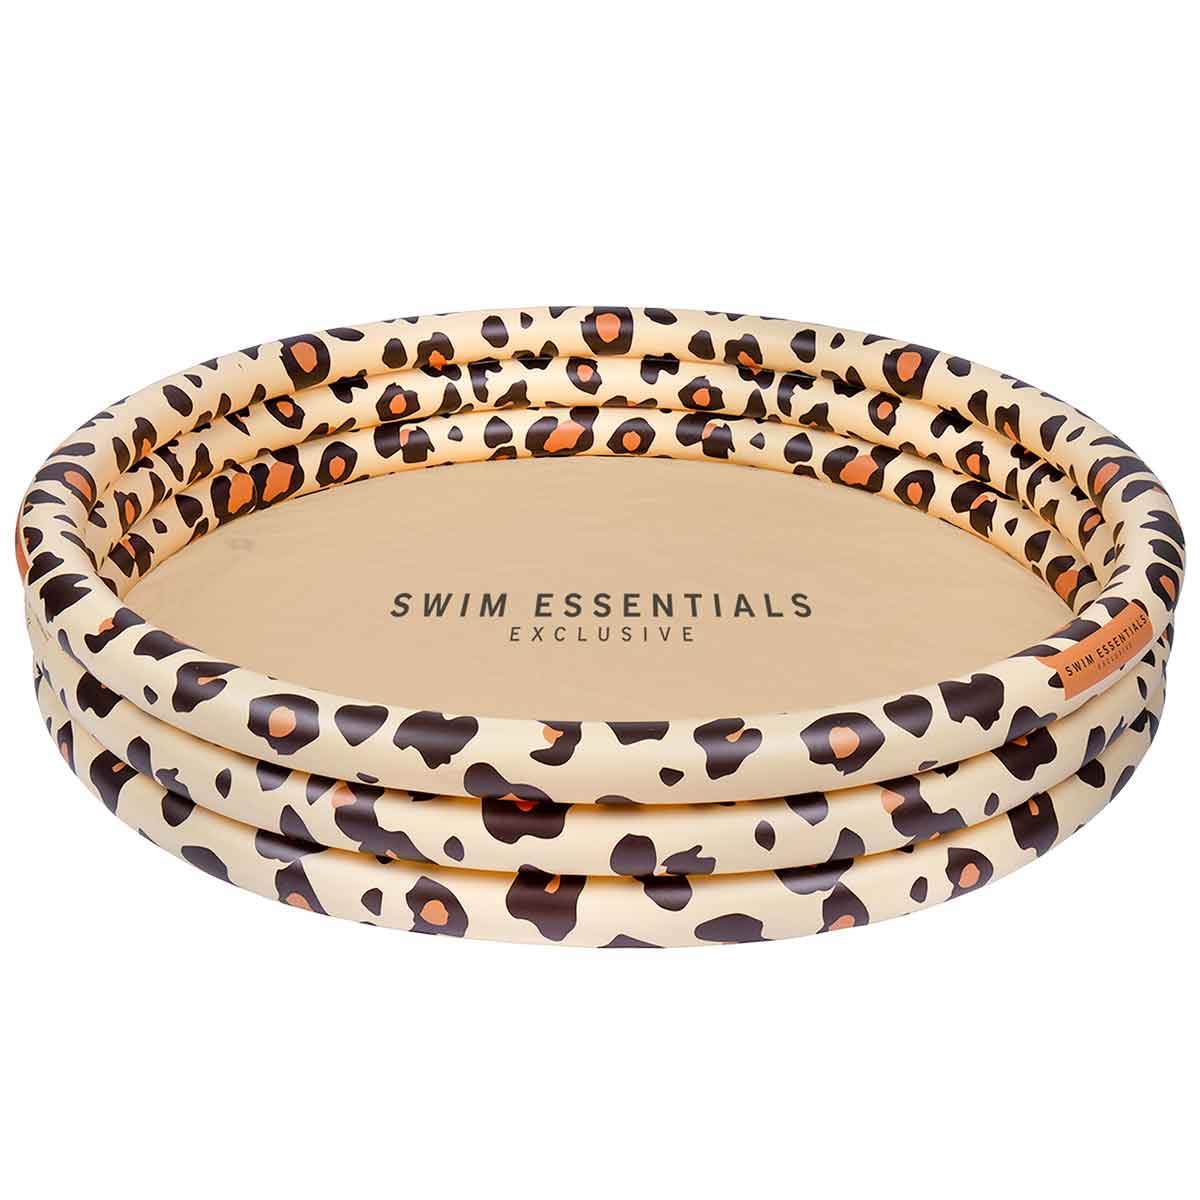 Het Swim Essentials zwembad 150 cm beige leopard is een heerlijk opblaasbaar zwembadje voor de warme zomerdagen. Dit zwembad zorgt voor lekker veel verkoeling en heel veel speelplezier. VanZus.